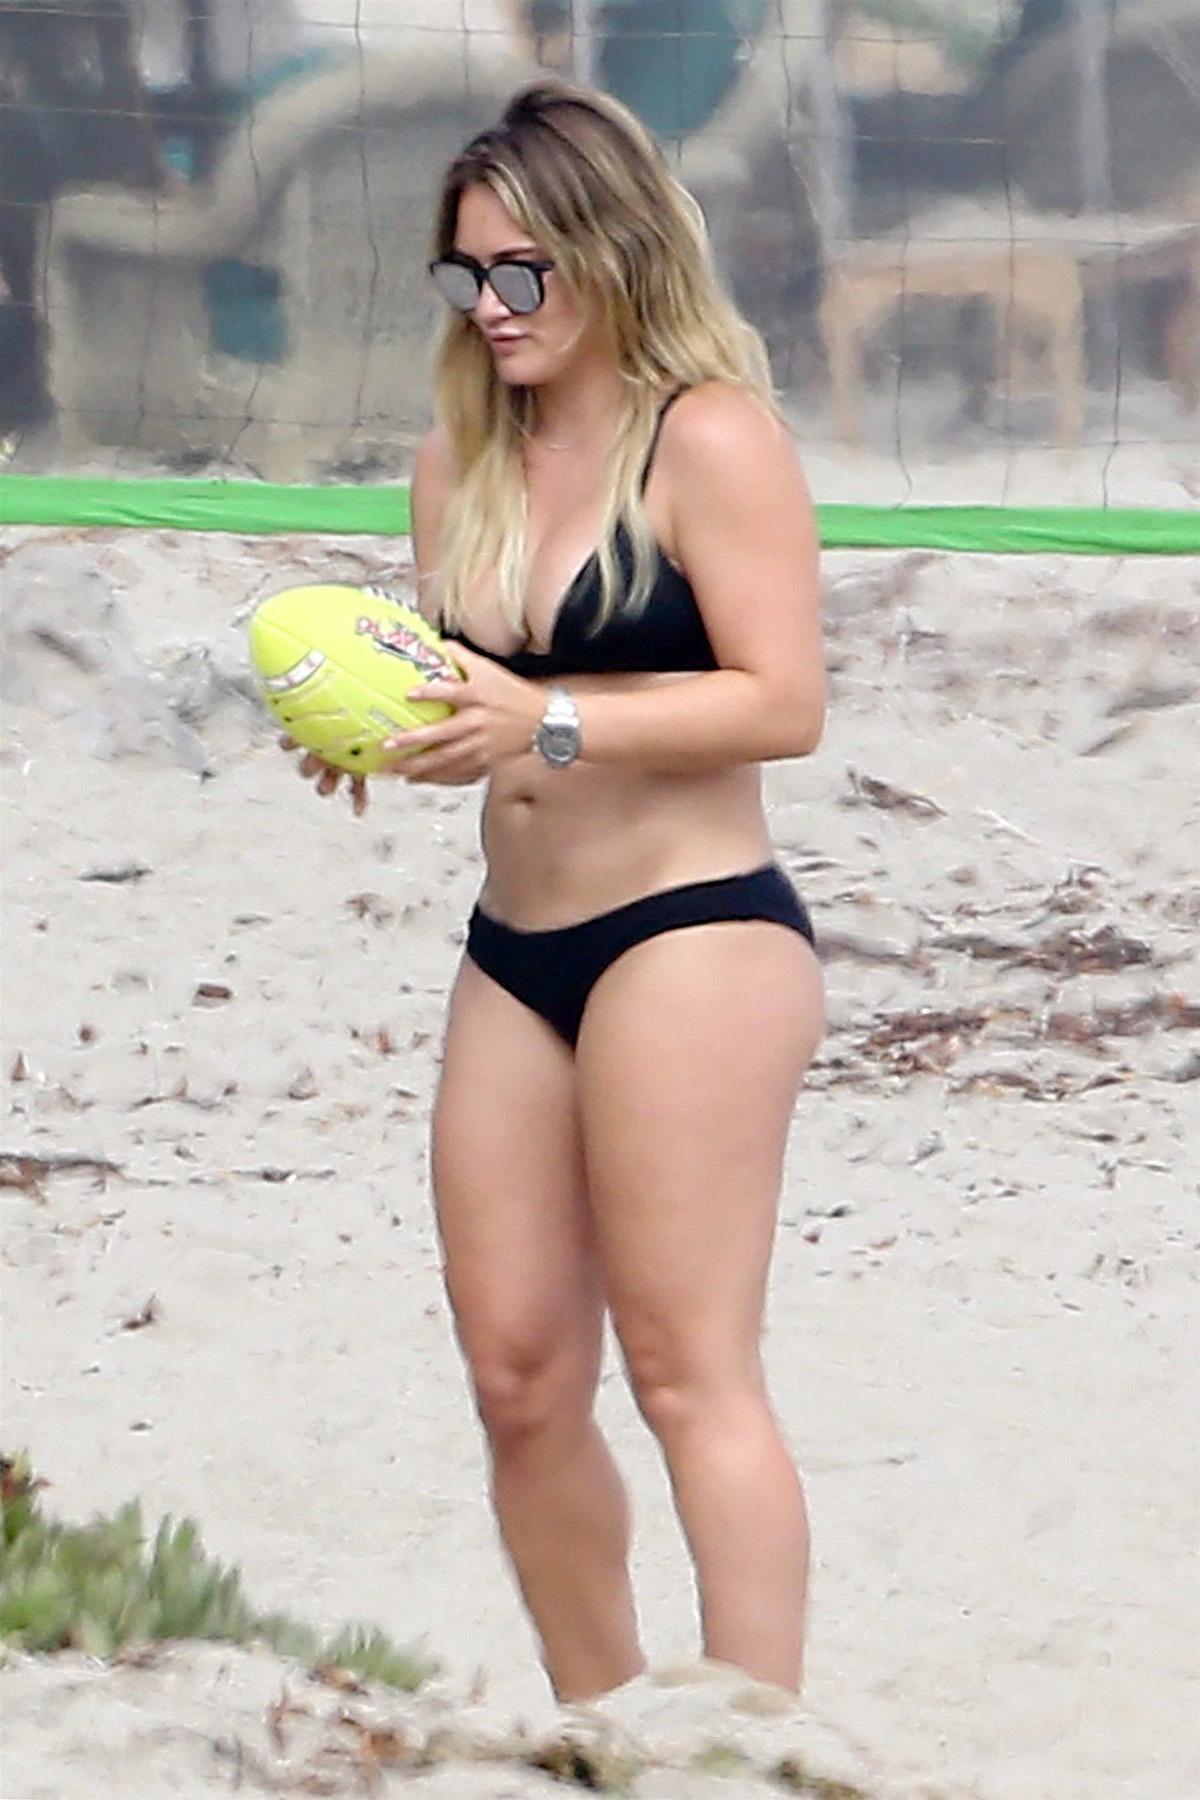 Hilary duff bikini beach candid set leaked